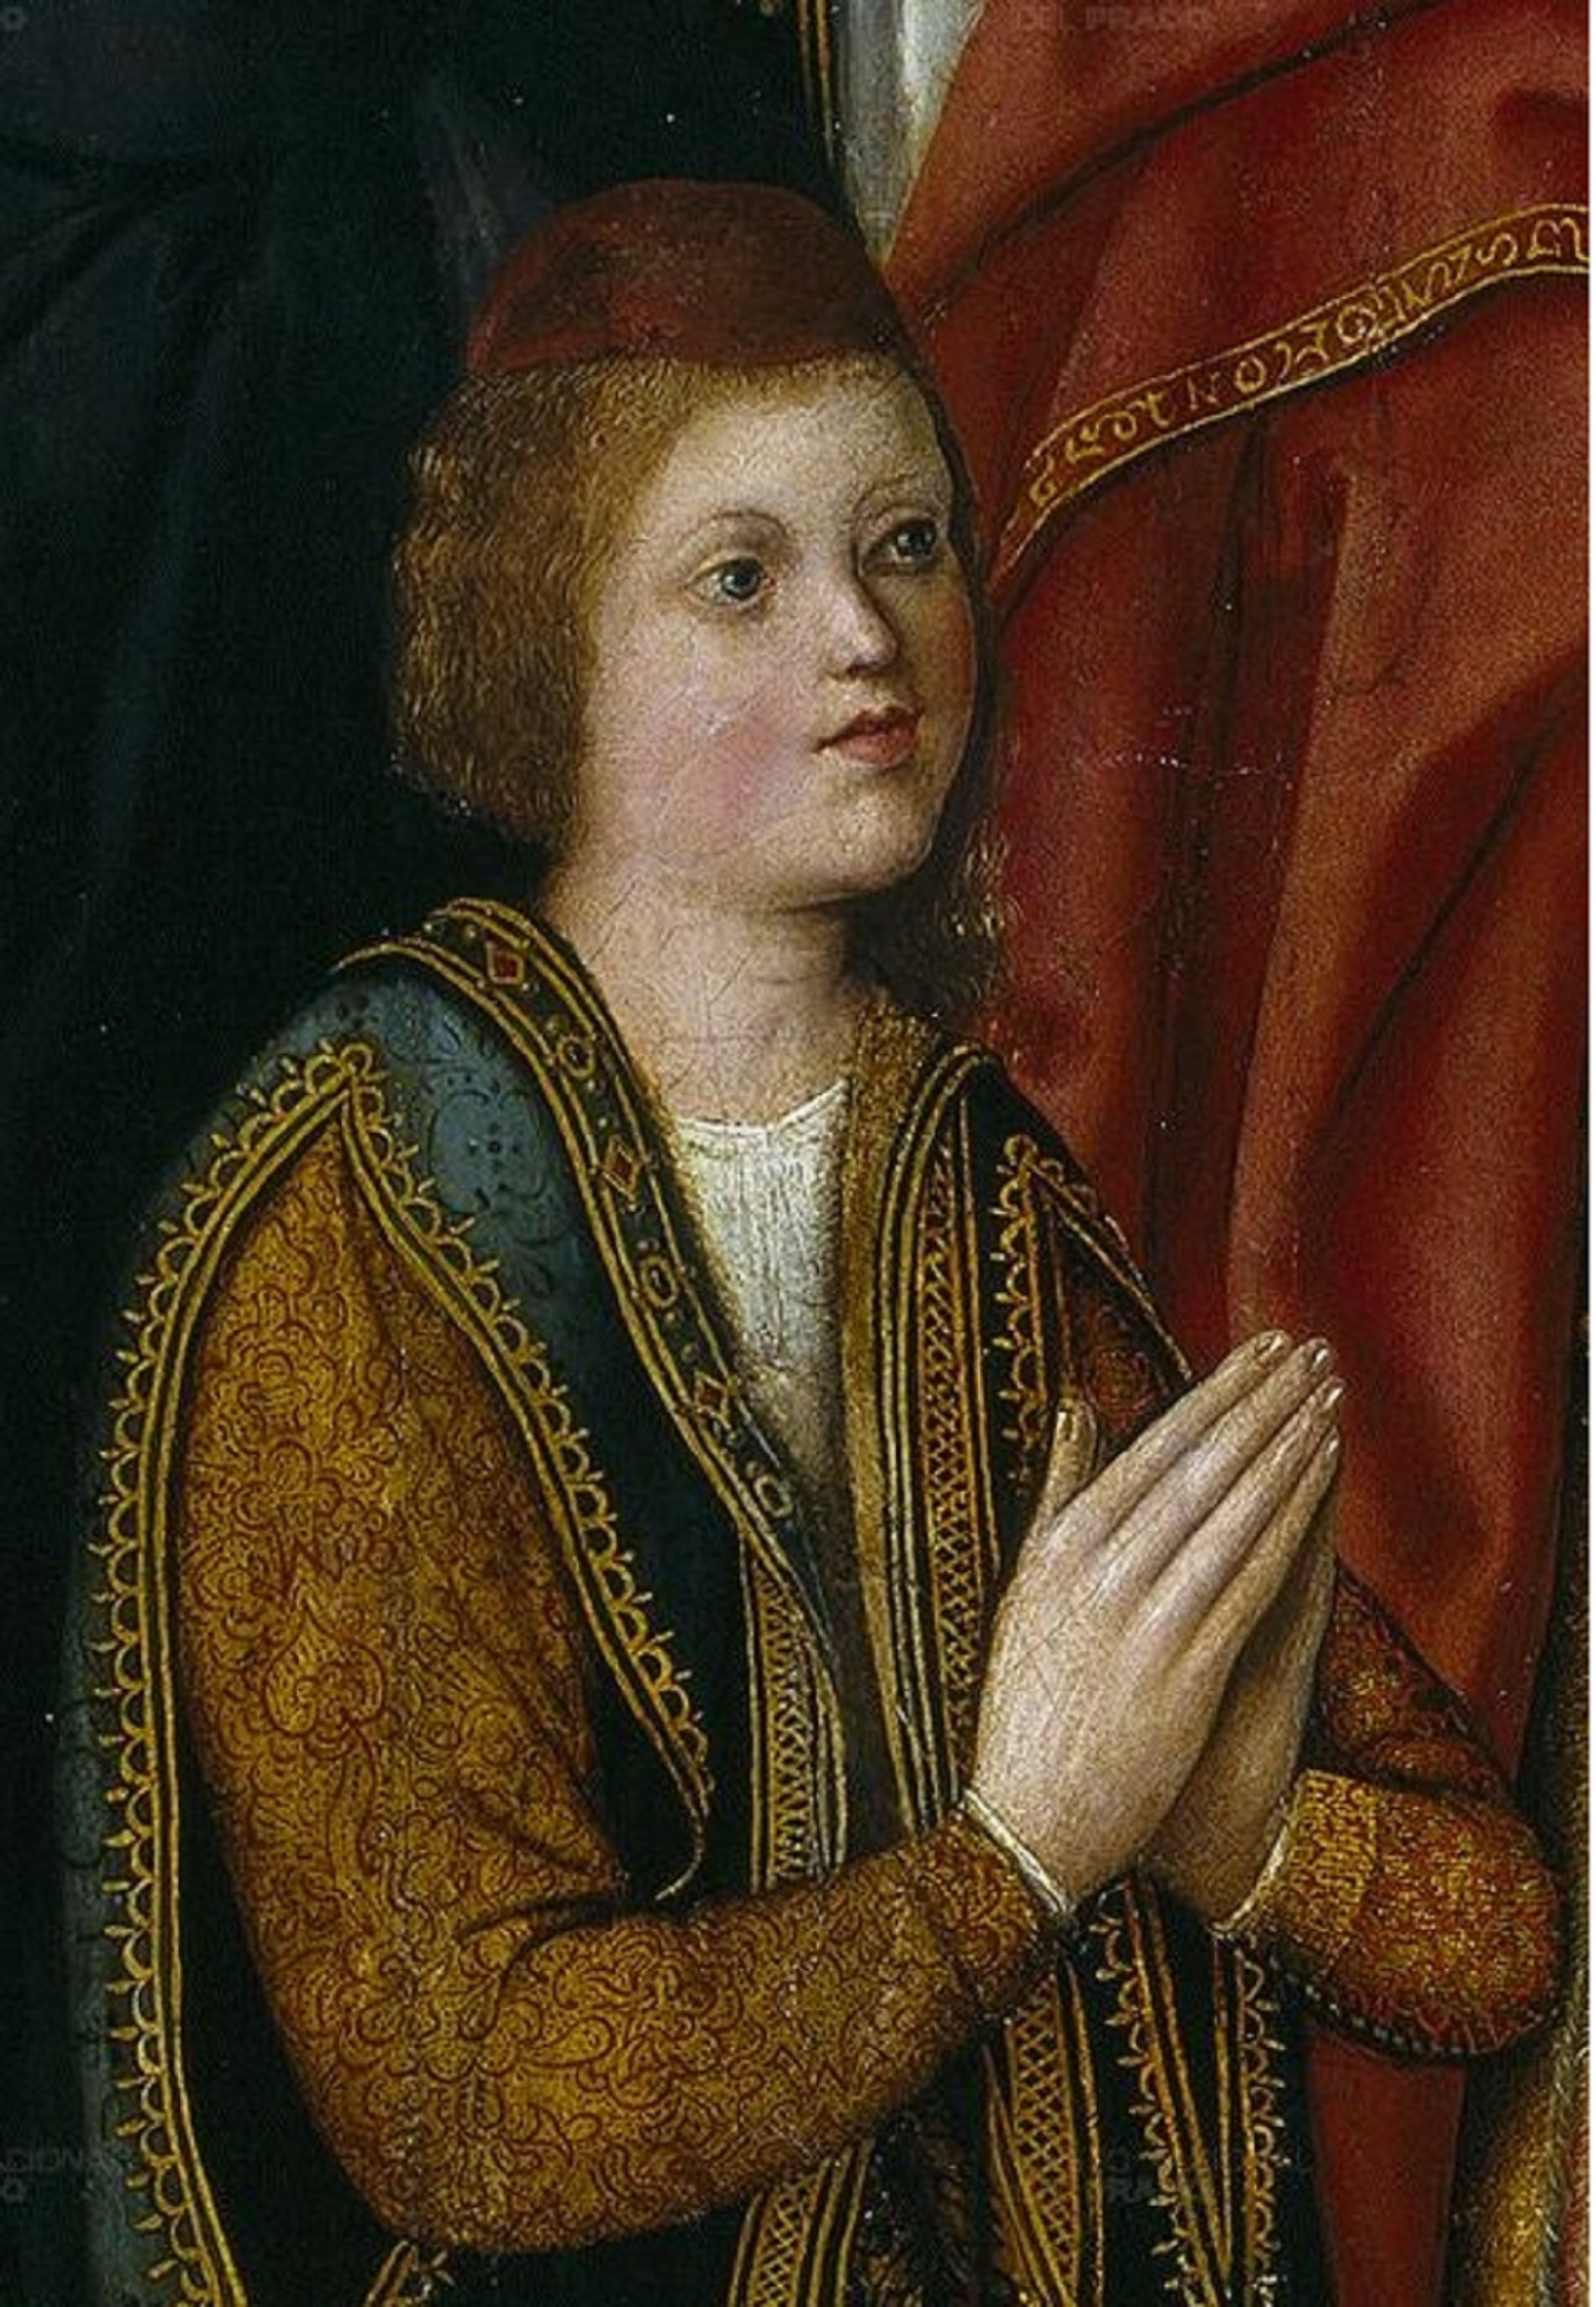 Nace Juan de Aragón, el heredero de los reyes católicos que nunca llegó a heredar